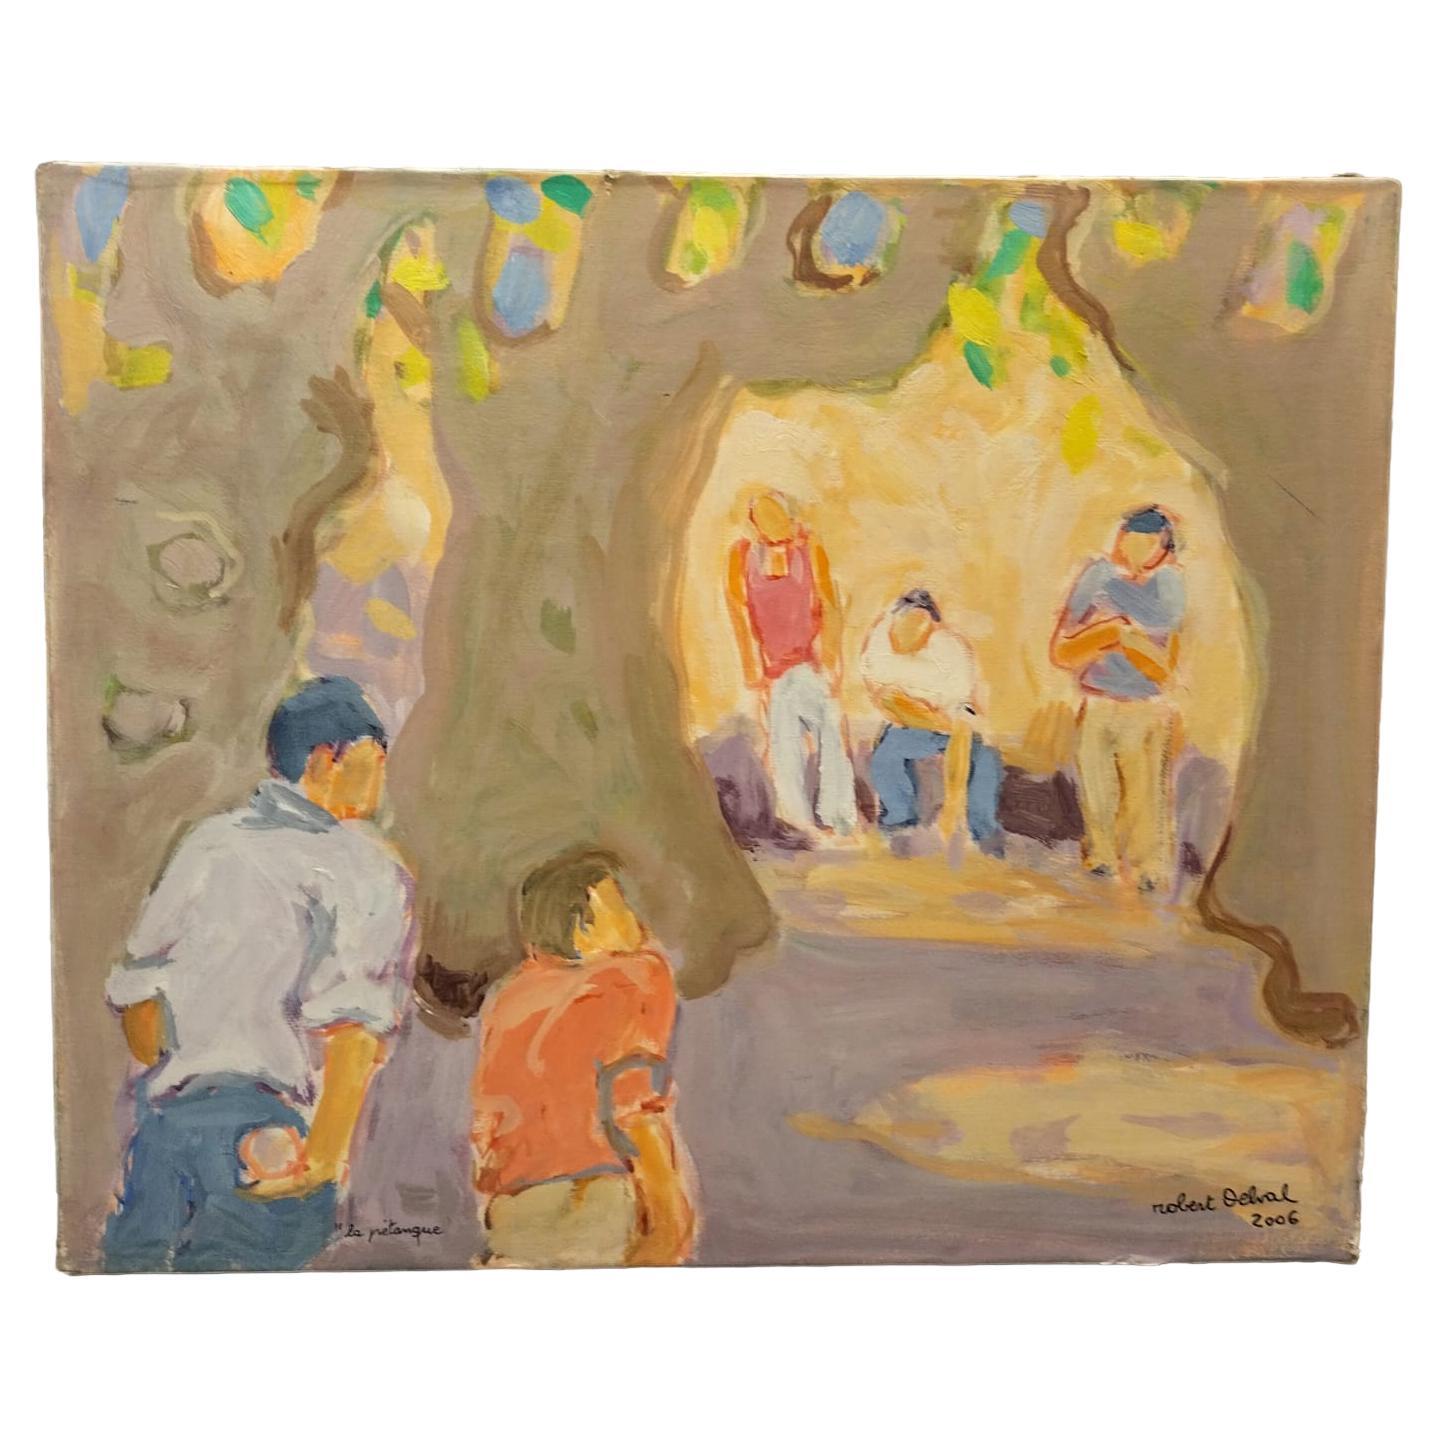 Ölgemälde auf leinwand 'La Pétanque' von Robert Delval (1934-)